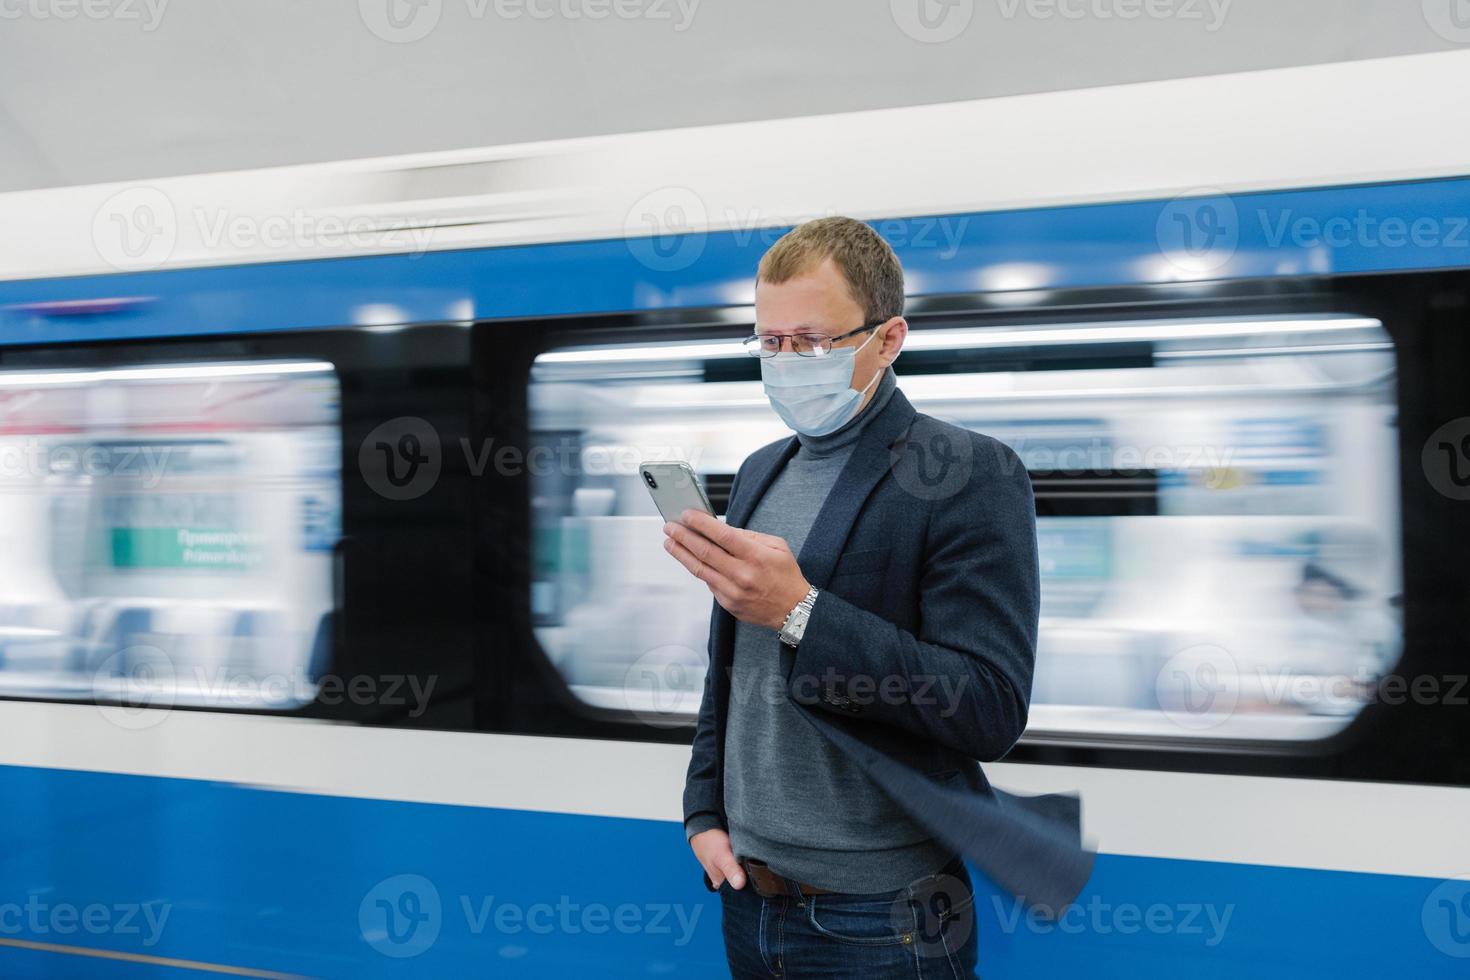 Foto eines Mannes mit Brille und medizinischer Schutzmaske, benutzt ein modernes Telefon, fährt mit öffentlichen Verkehrsmitteln, stellt sich auf dem Bahnsteig gegen den fahrenden Zug, informiert sich online über das neue Covid-19-Virus